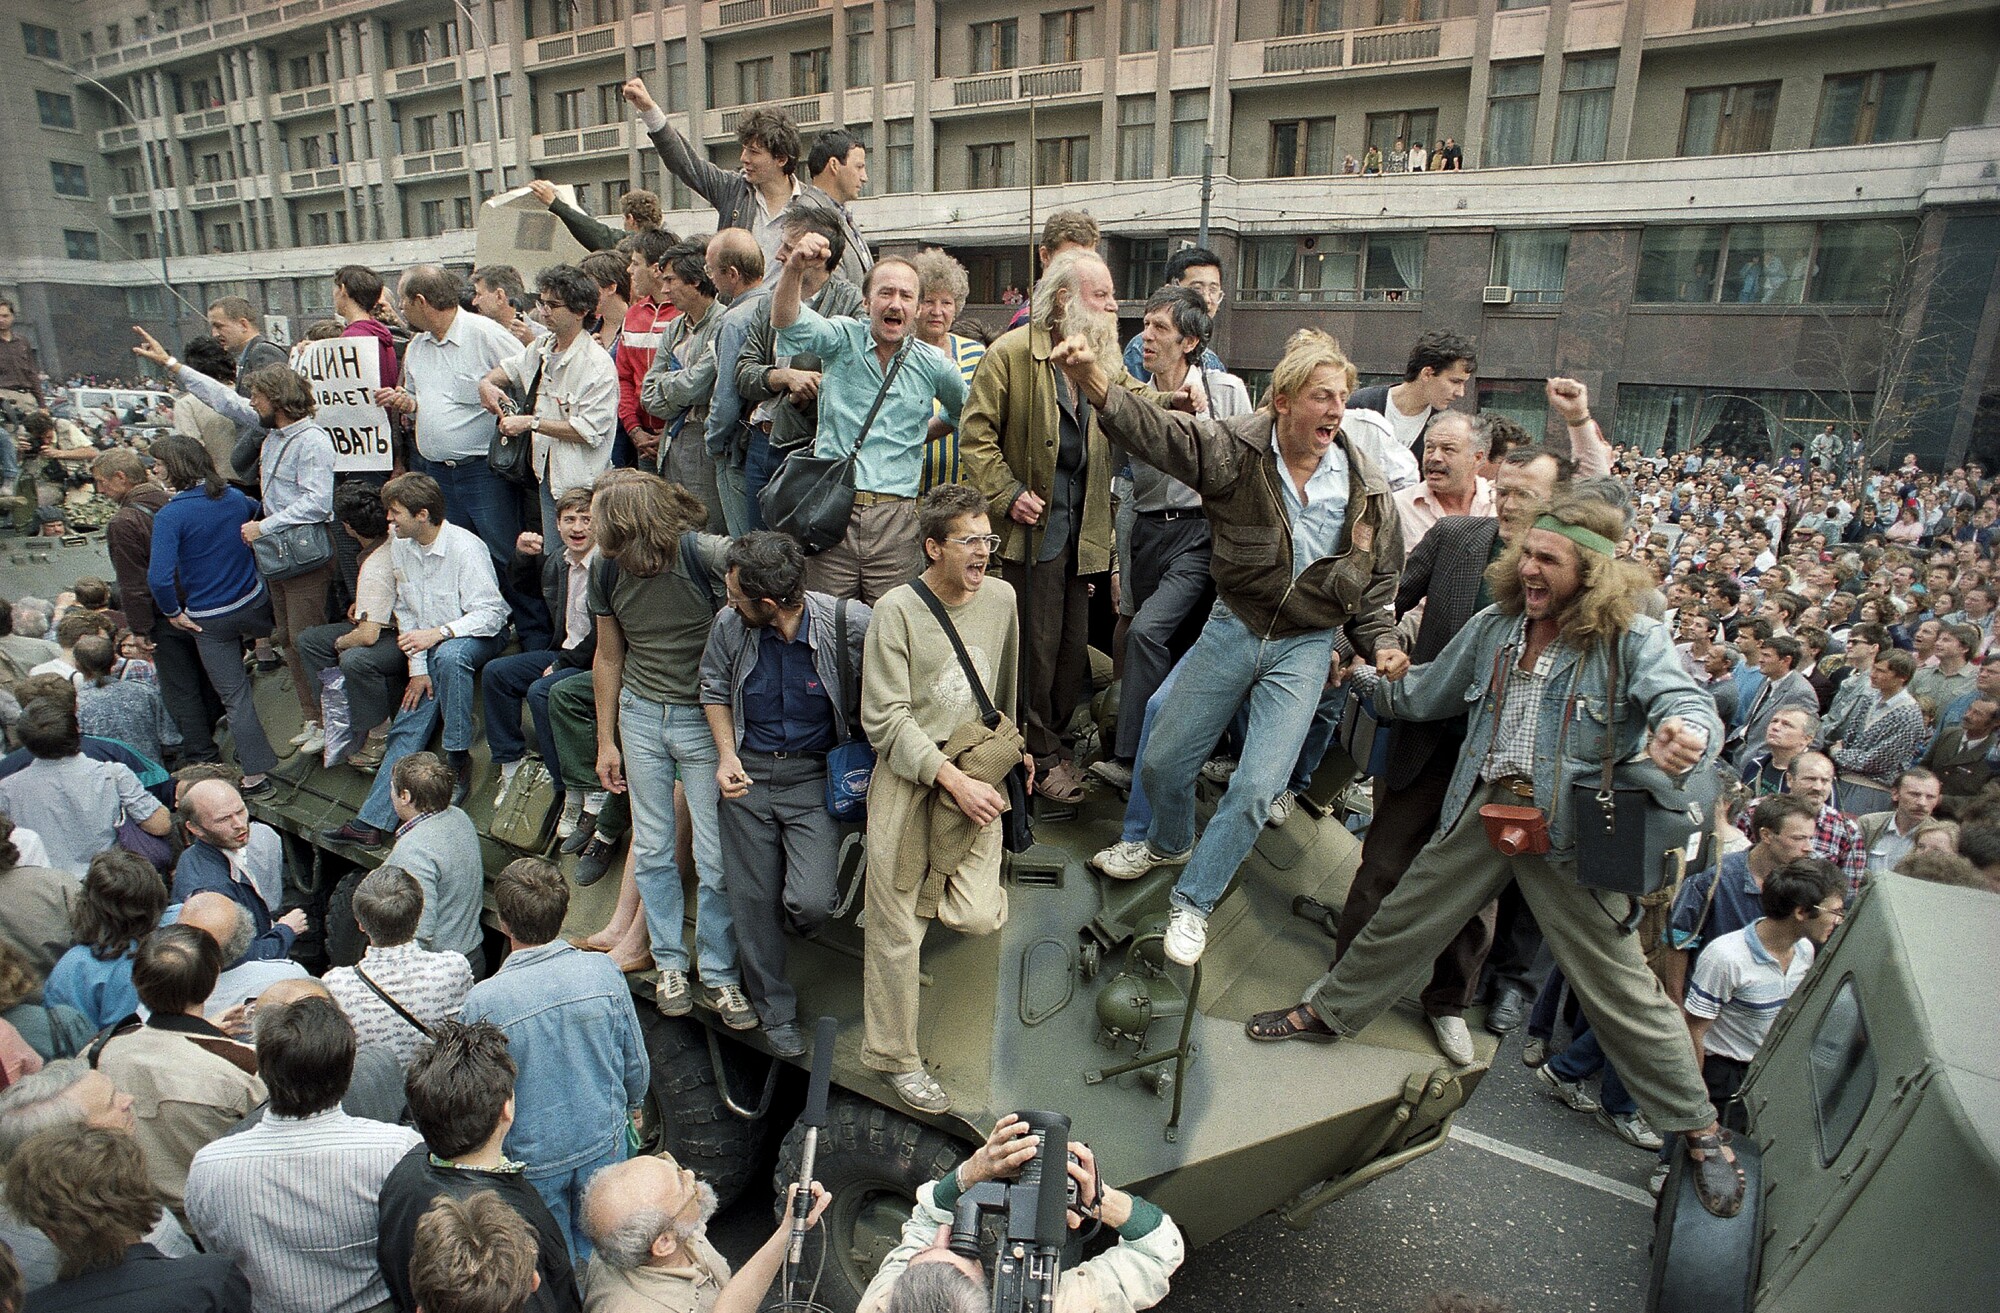 19 Ağustos 1991 tarihli bu Pazartesi dosya fotoğrafında, bir personel taşıyıcısının etrafında toplanan bir kalabalık 